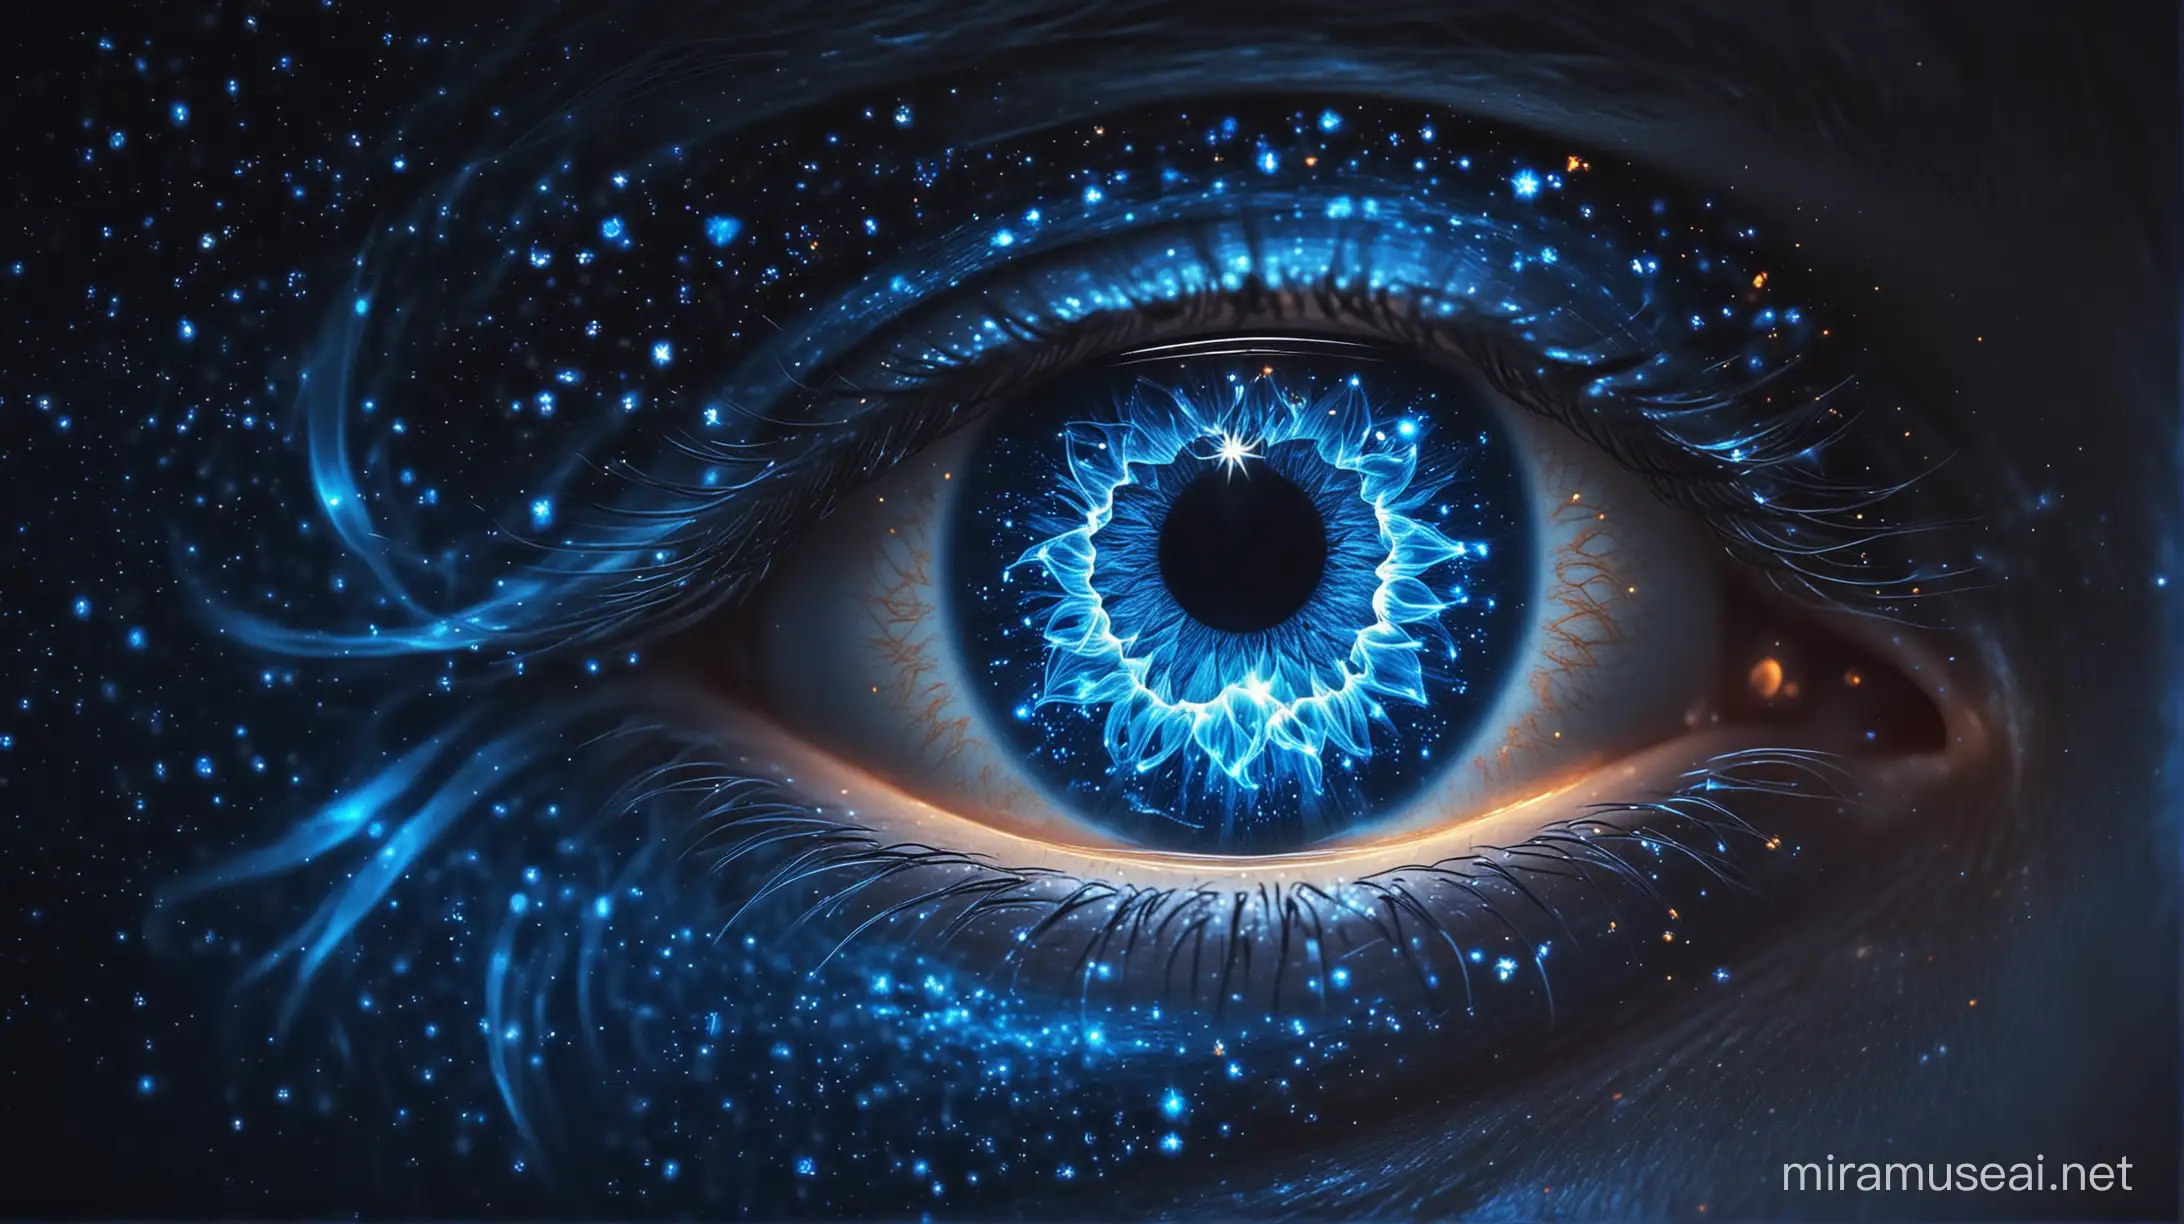 голямо око направено от звезди интегразлни схеми и лъчиста енергия голямо око направено от звезди интегразлни схеми и лъчиста енергия красиво око цялото от синя светлина и звезди горящо със сини пламъци . око светещо и искрящо